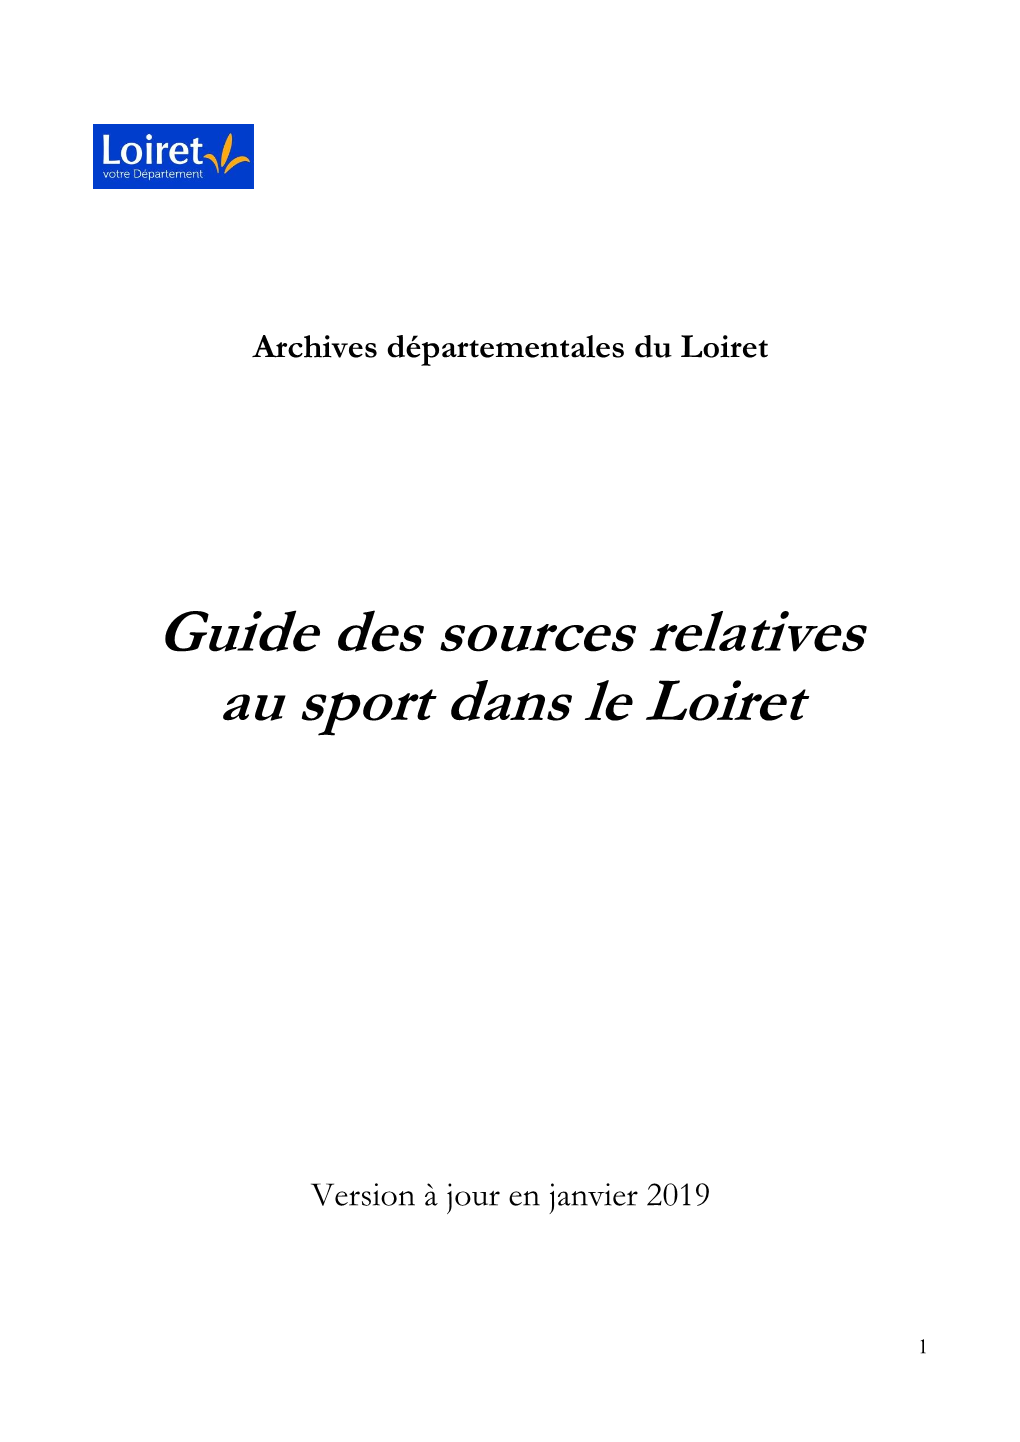 Guide Des Sources Relatives Au Sport Dans Le Loiret